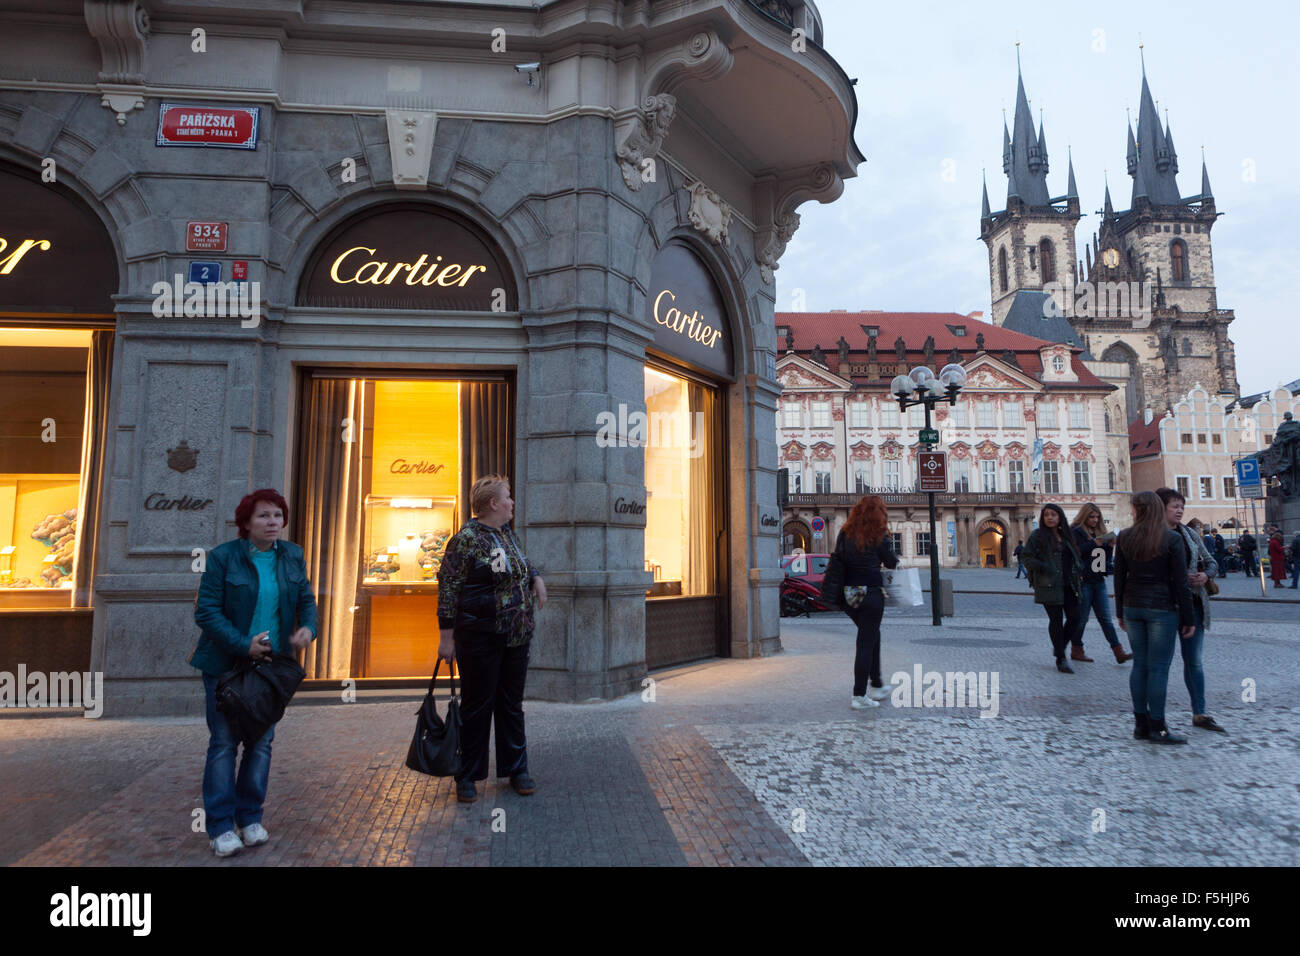 Cartier, negozio di moda in Parizska street Praga, Old Town, Repubblica Ceca Foto Stock